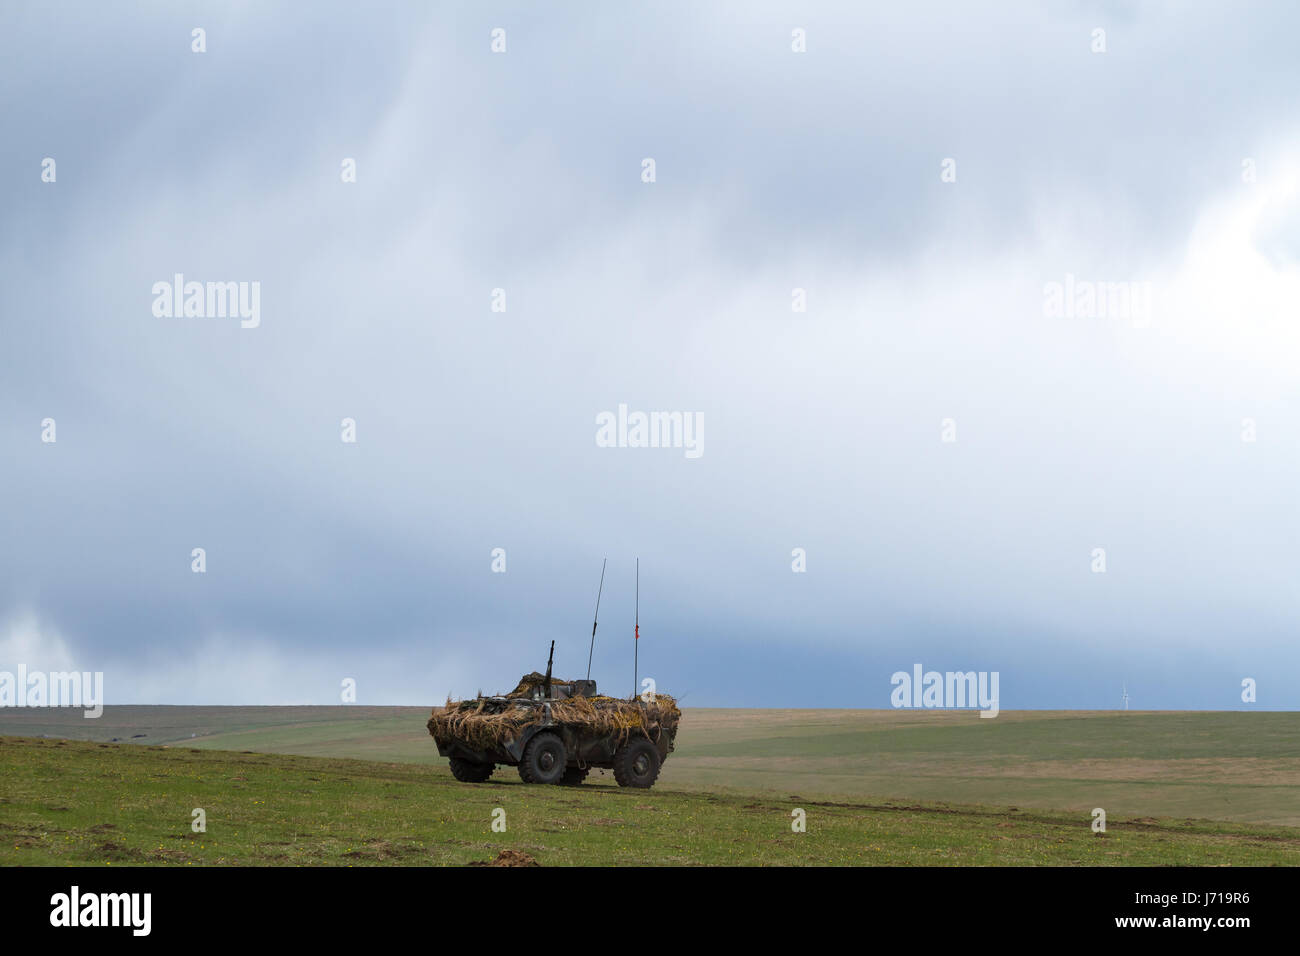 ABC-79M corazzato portatore personale, con elementi mimetizzazione, appare nel poligono di tiro Smirdan durante un esercizio militare multinazionale NATO 'Wind Spring -15'. Foto Stock